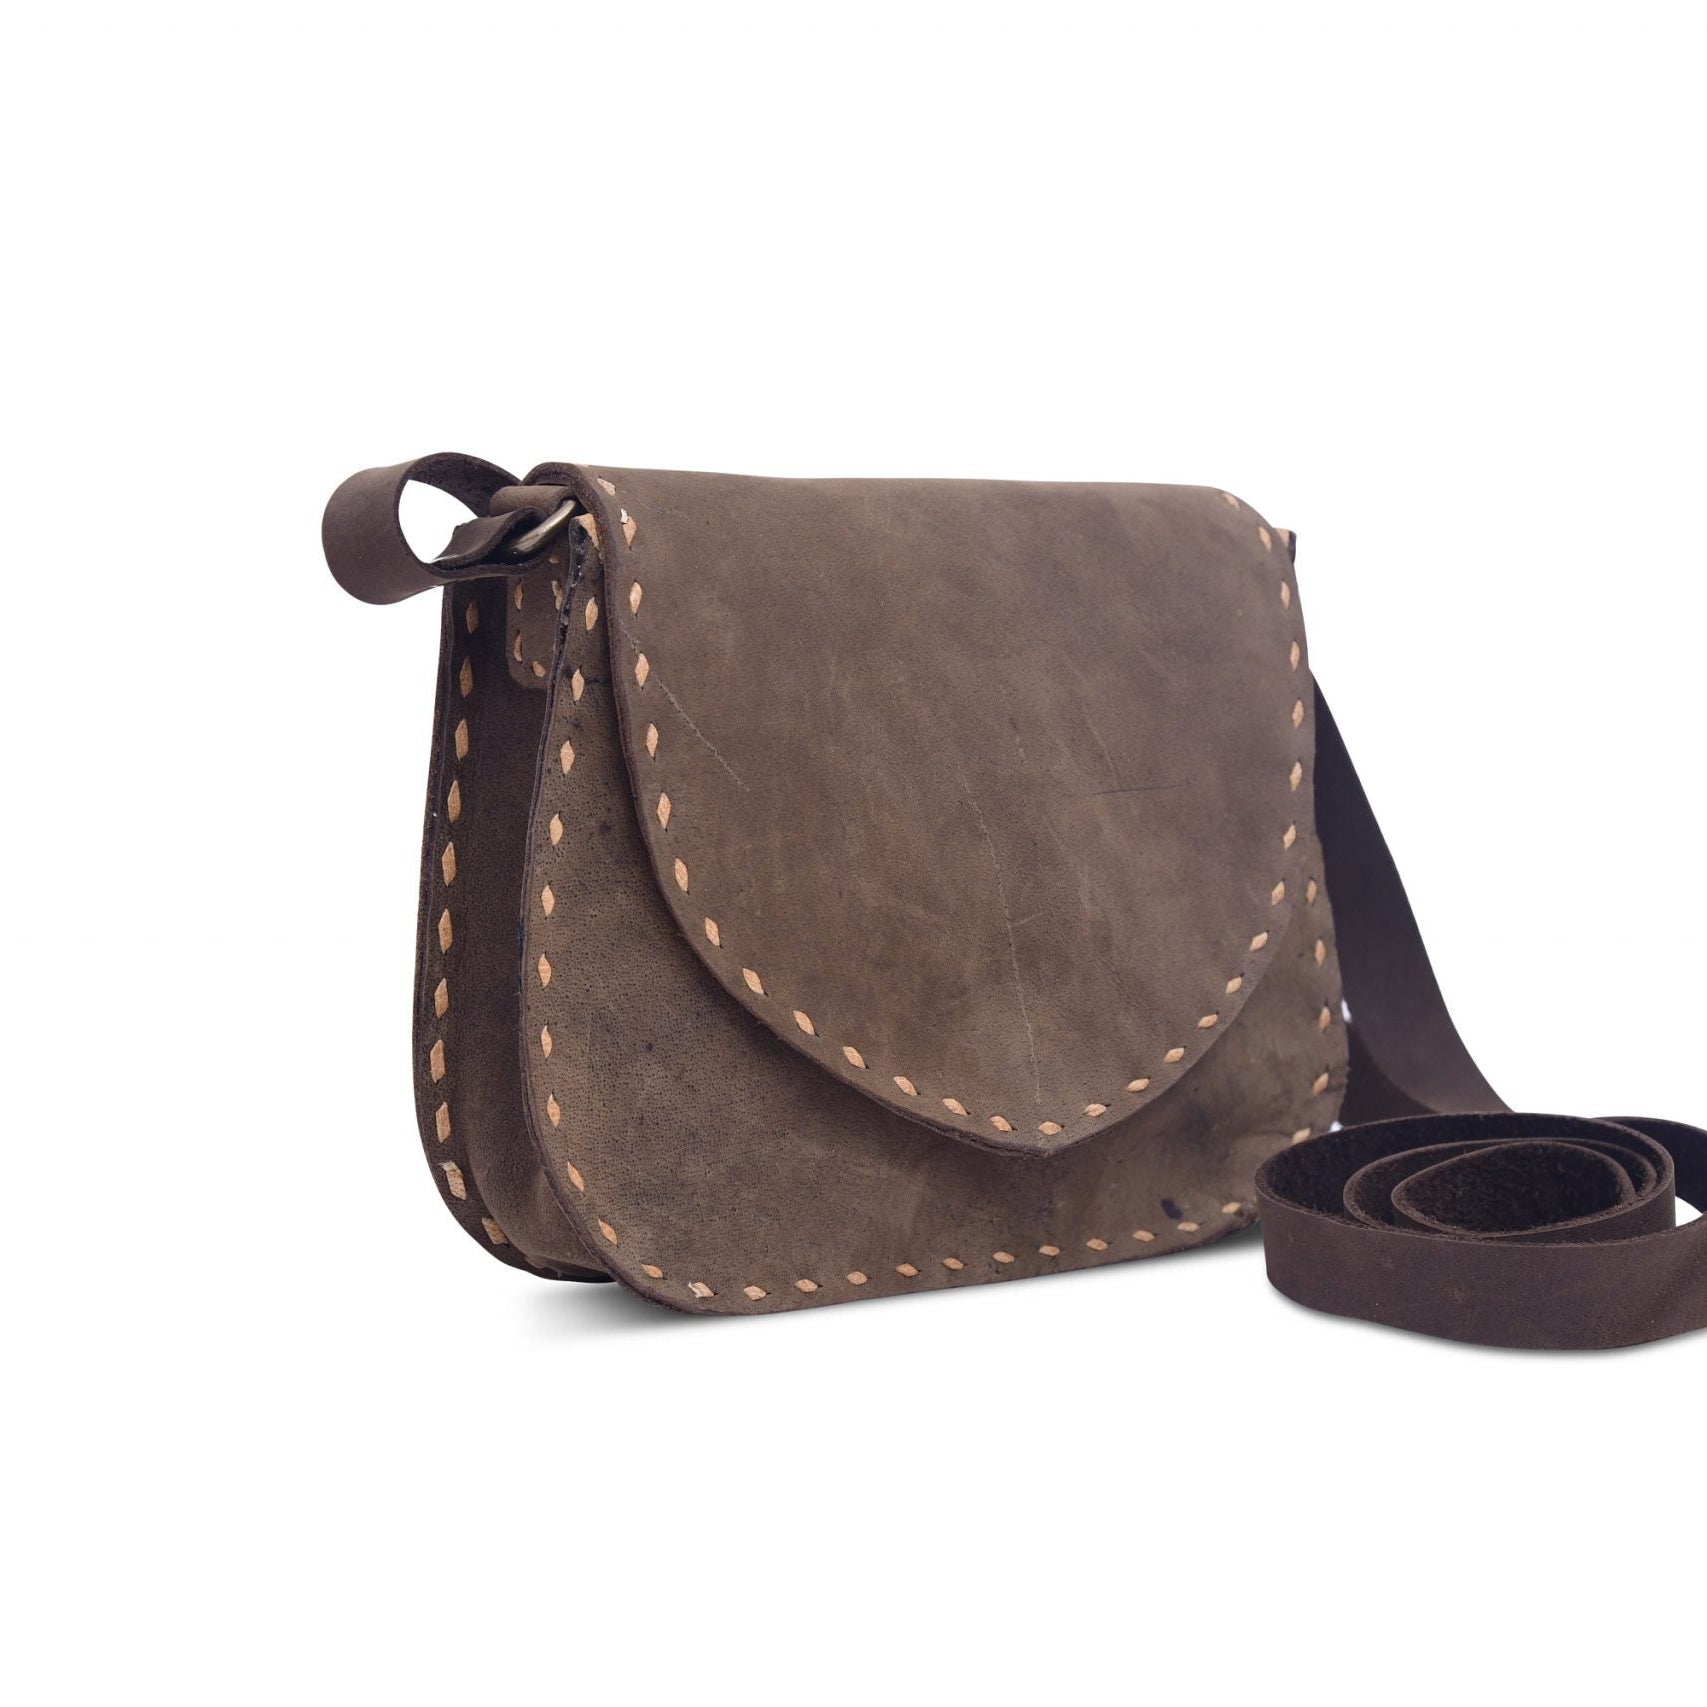 Leather Messenger Crossbody Shoulder Bag - Versatile Travel Satchel